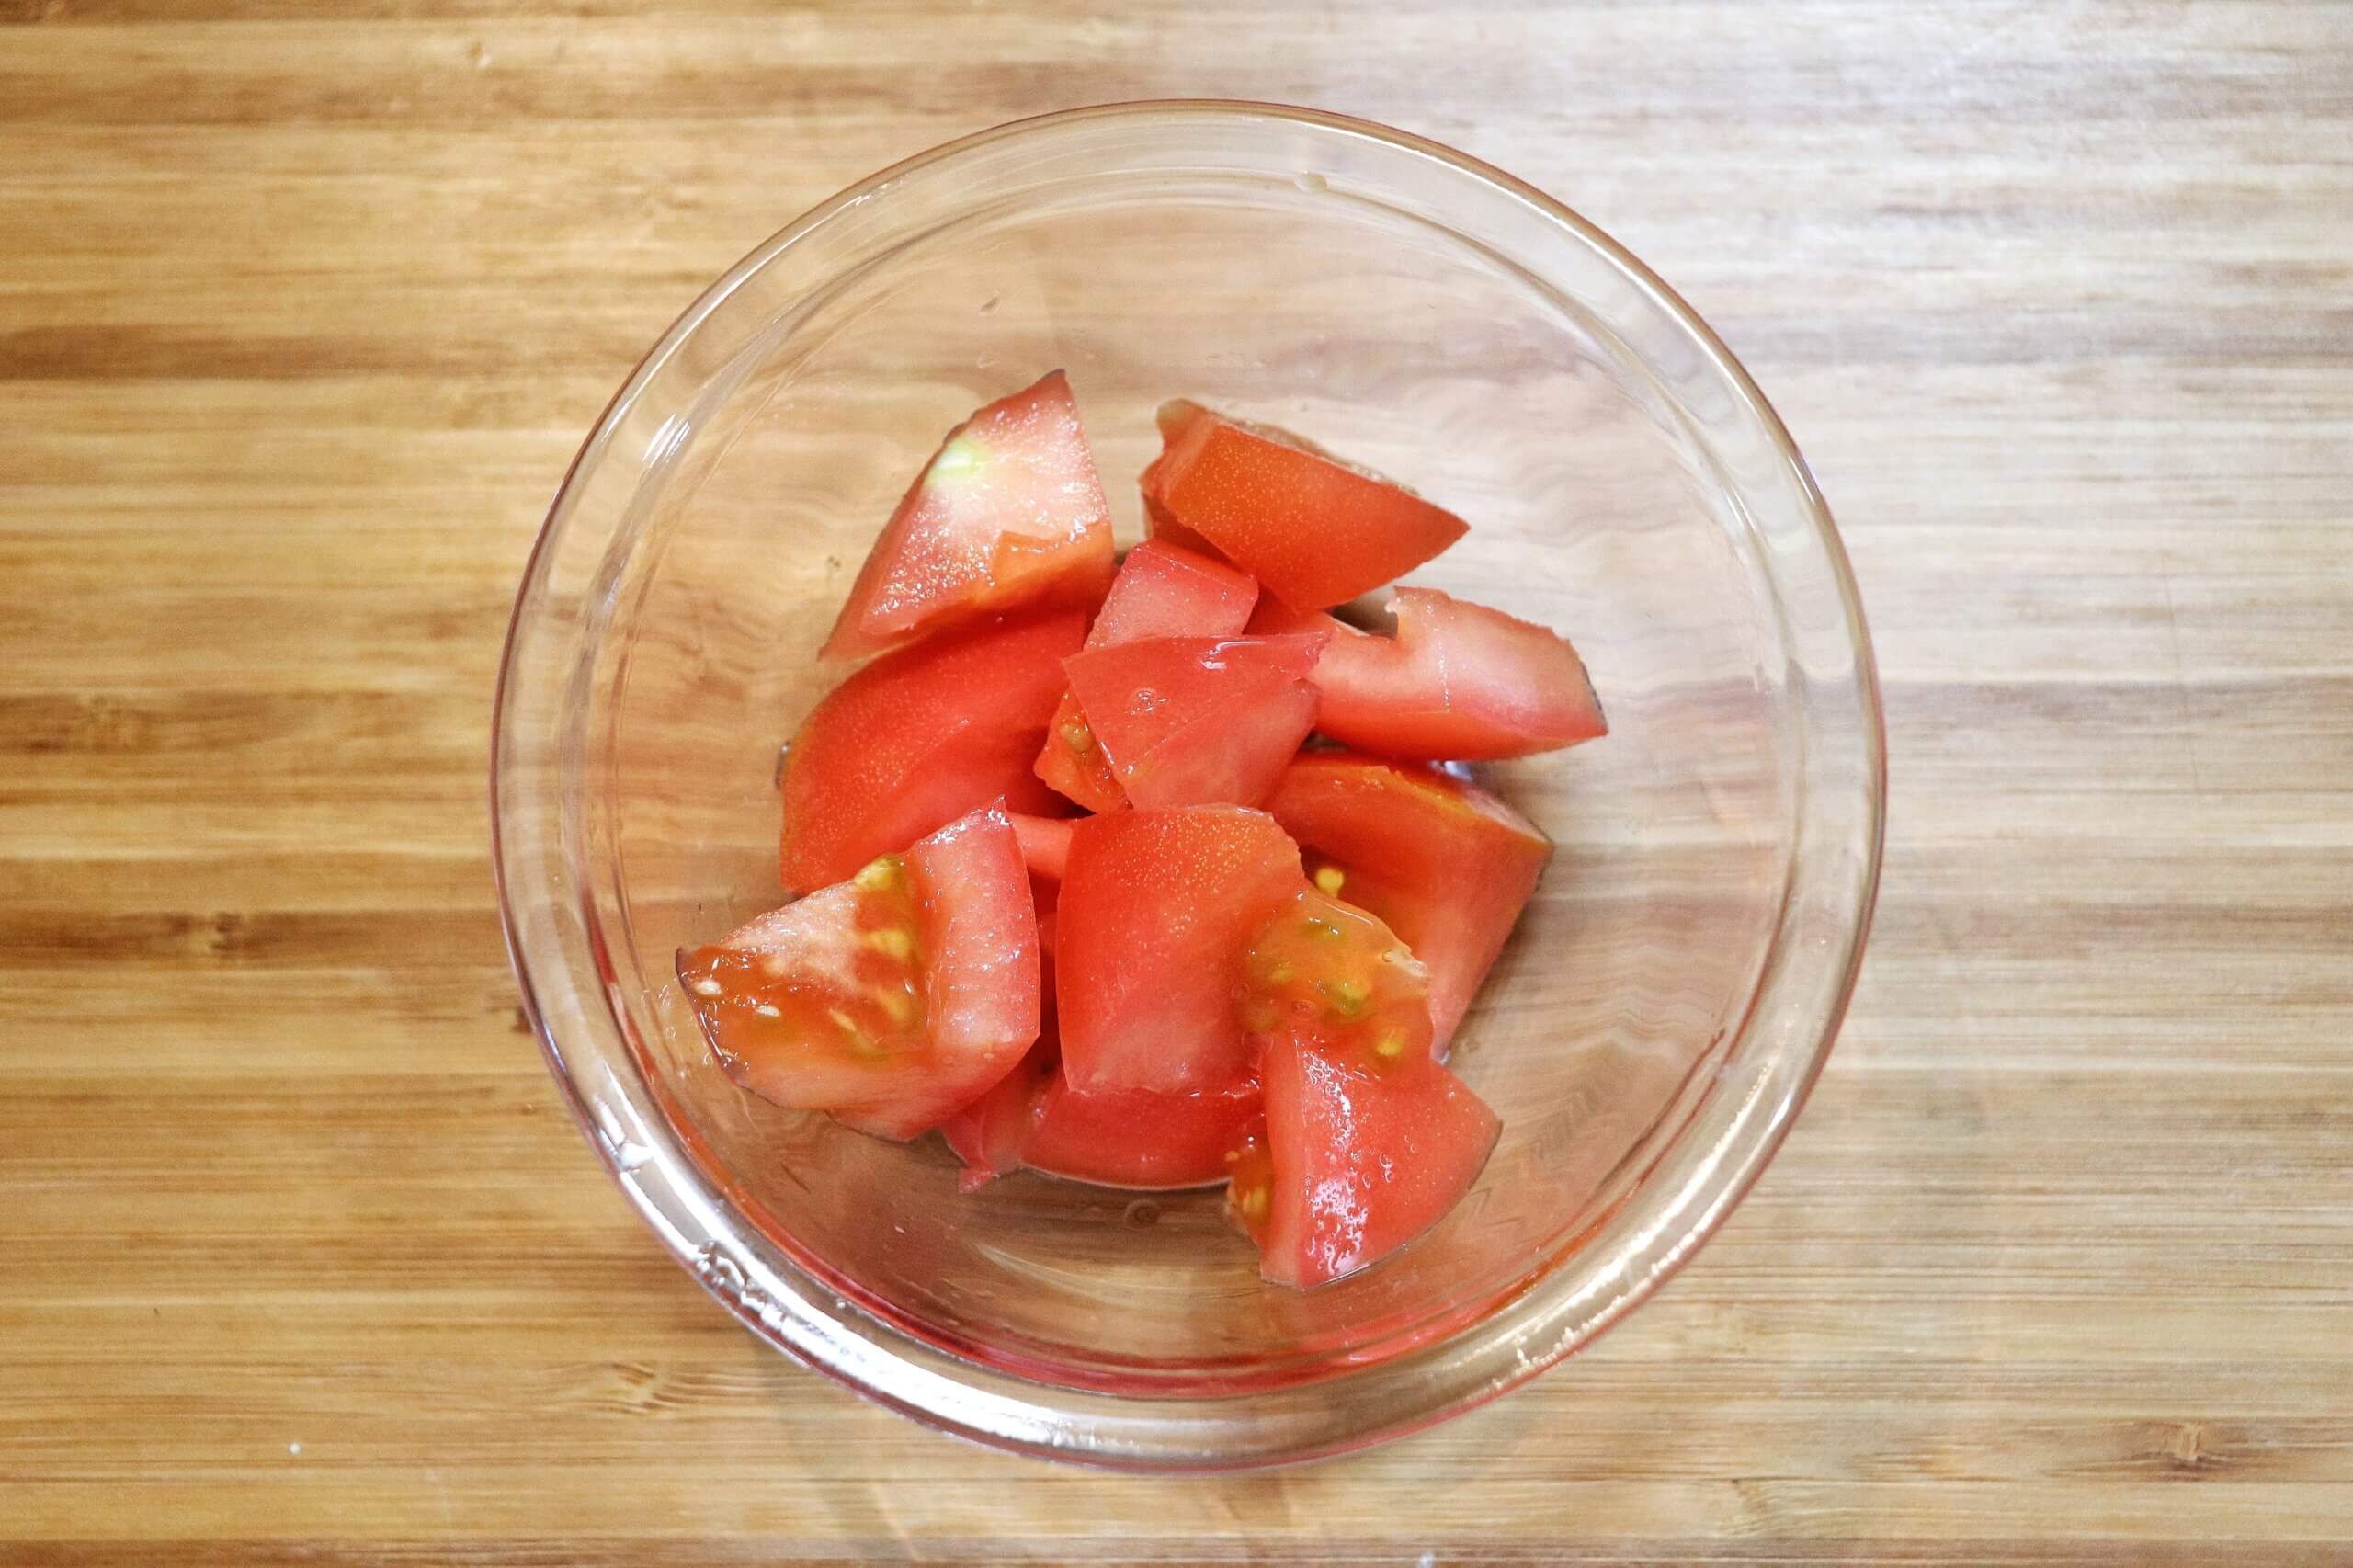 トマトは食べやすい大きさに切る